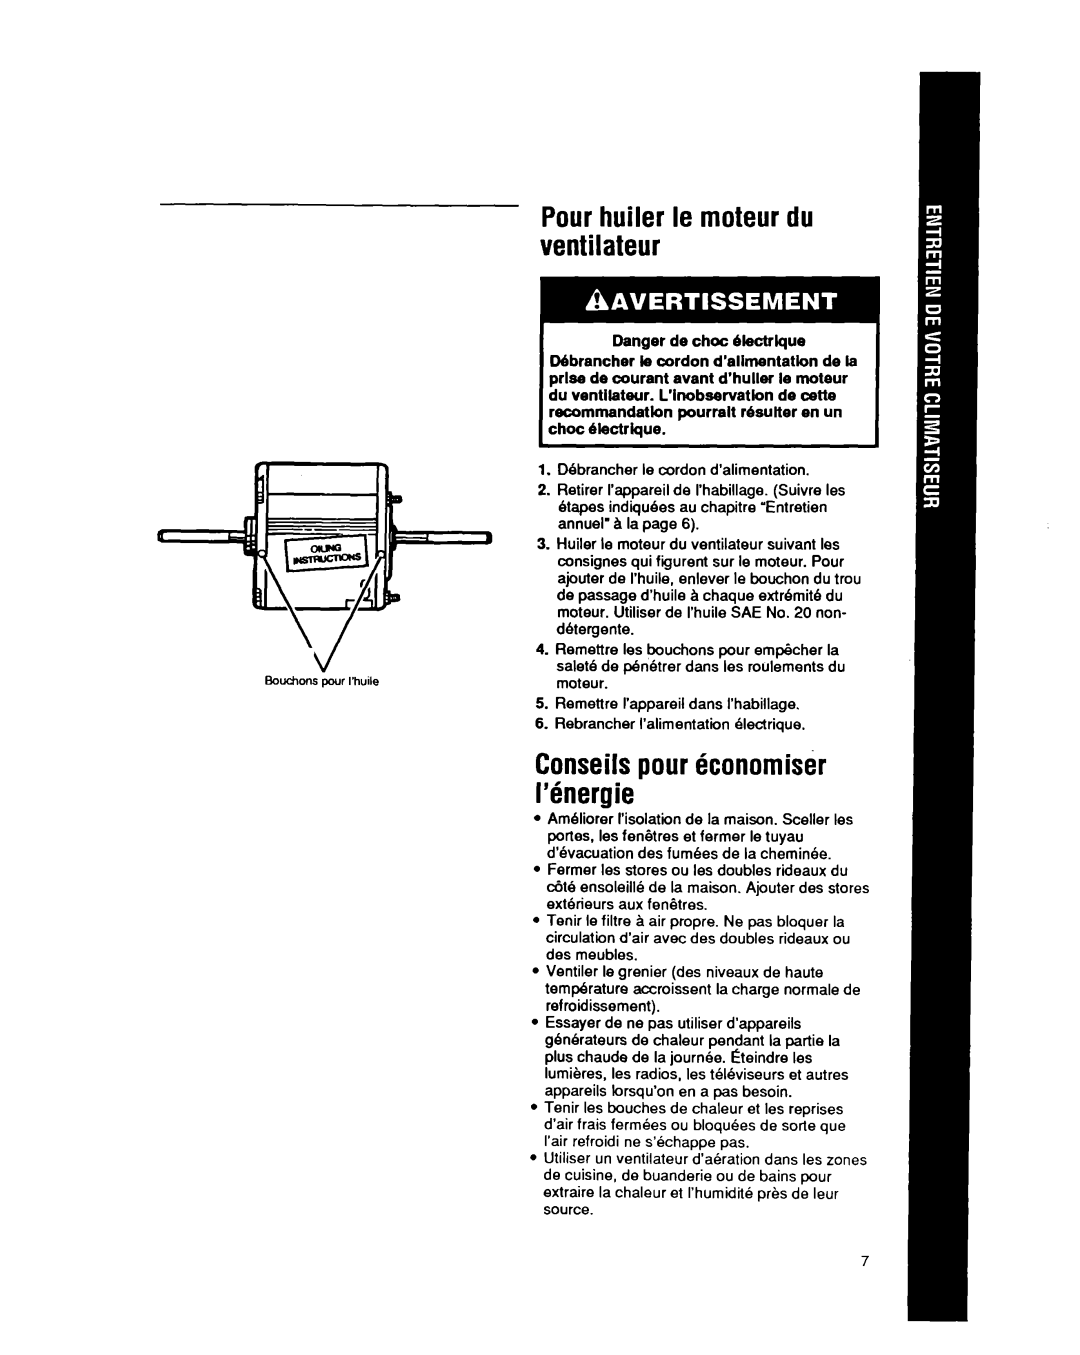 Whirlpool CAH12W04 manual Pourhuiler le moteur du ventilateur, Conseilspour konomisfk l’bnergie, Danger de choc Olectrlque 